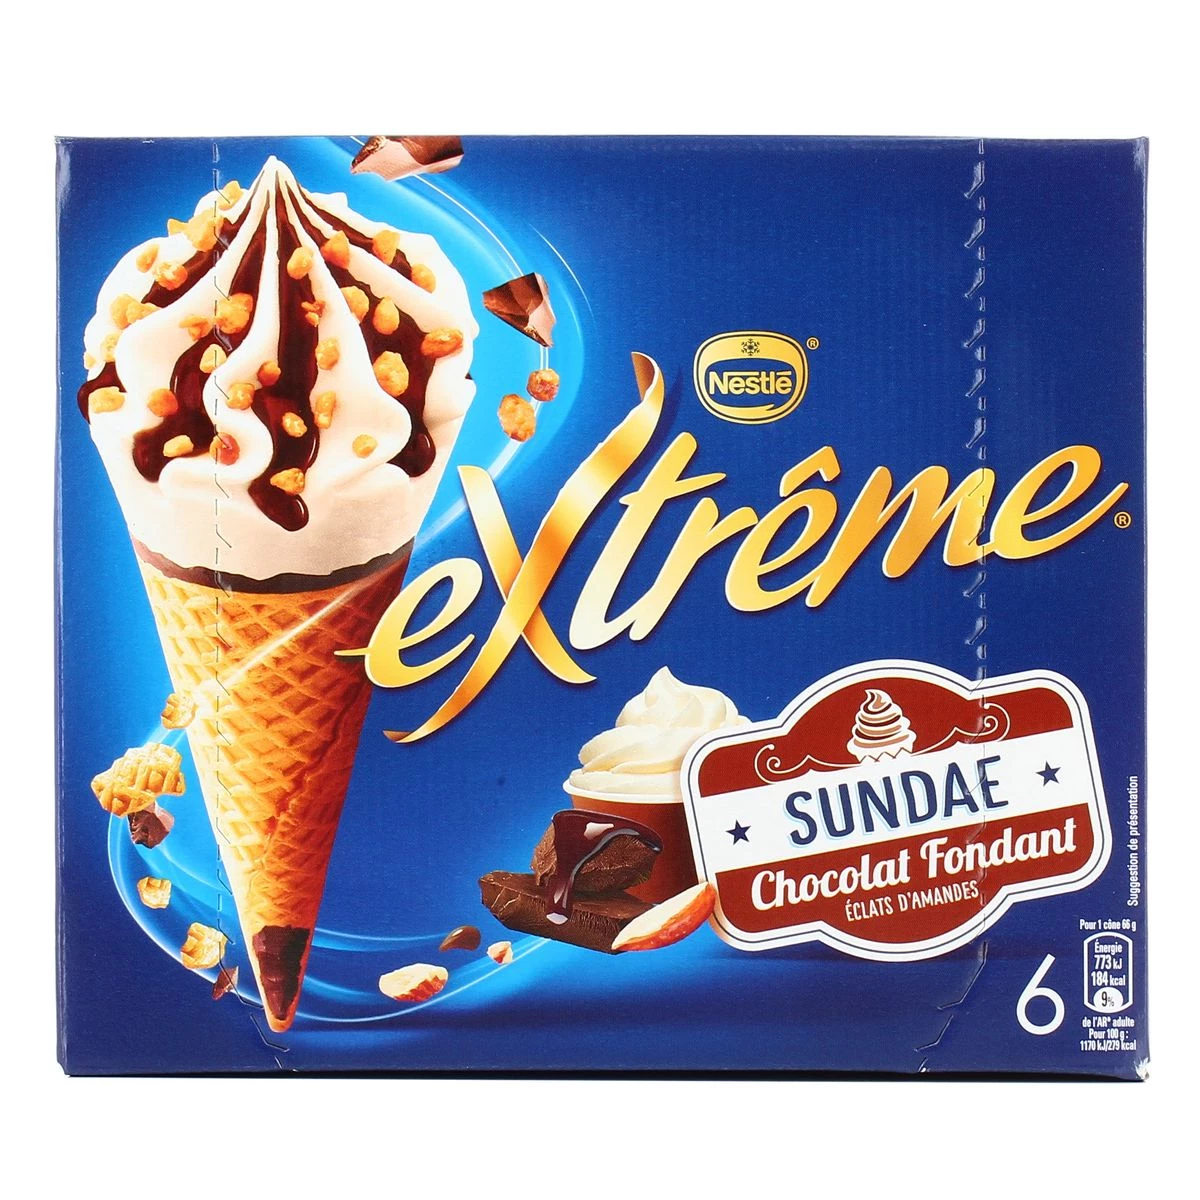 Glace sundae chocolat fondant extrême x6 - NESTLE